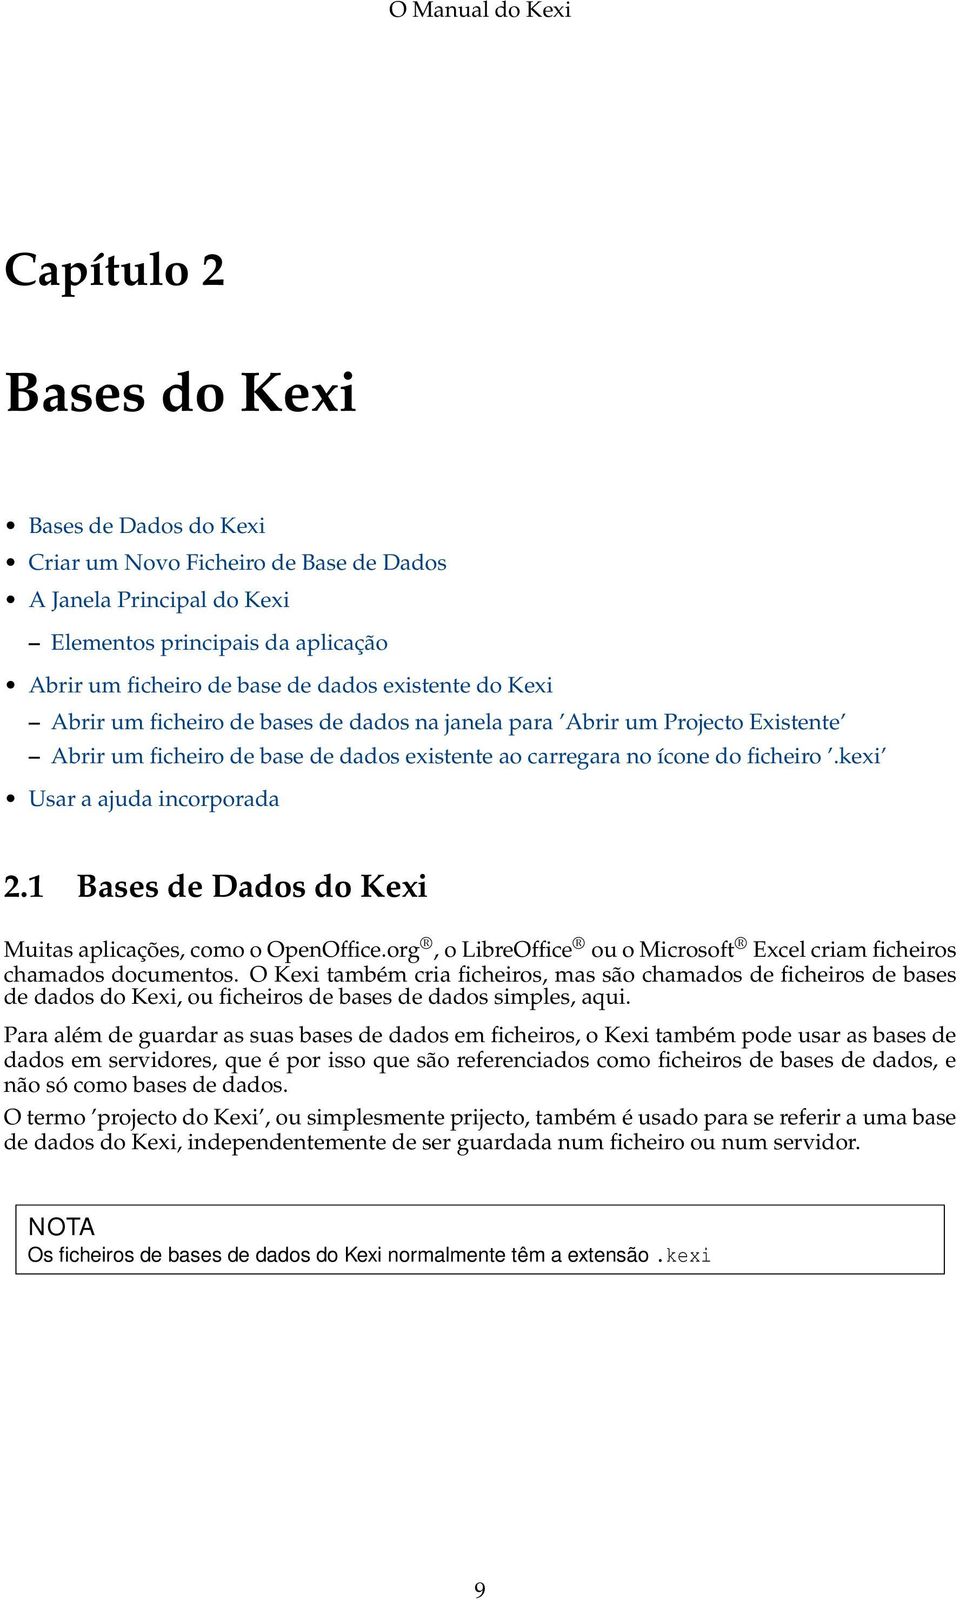 1 Bases de Dados do Kexi Muitas aplicações, como o OpenOffice.org, o LibreOffice ou o Microsoft Excel criam ficheiros chamados documentos.